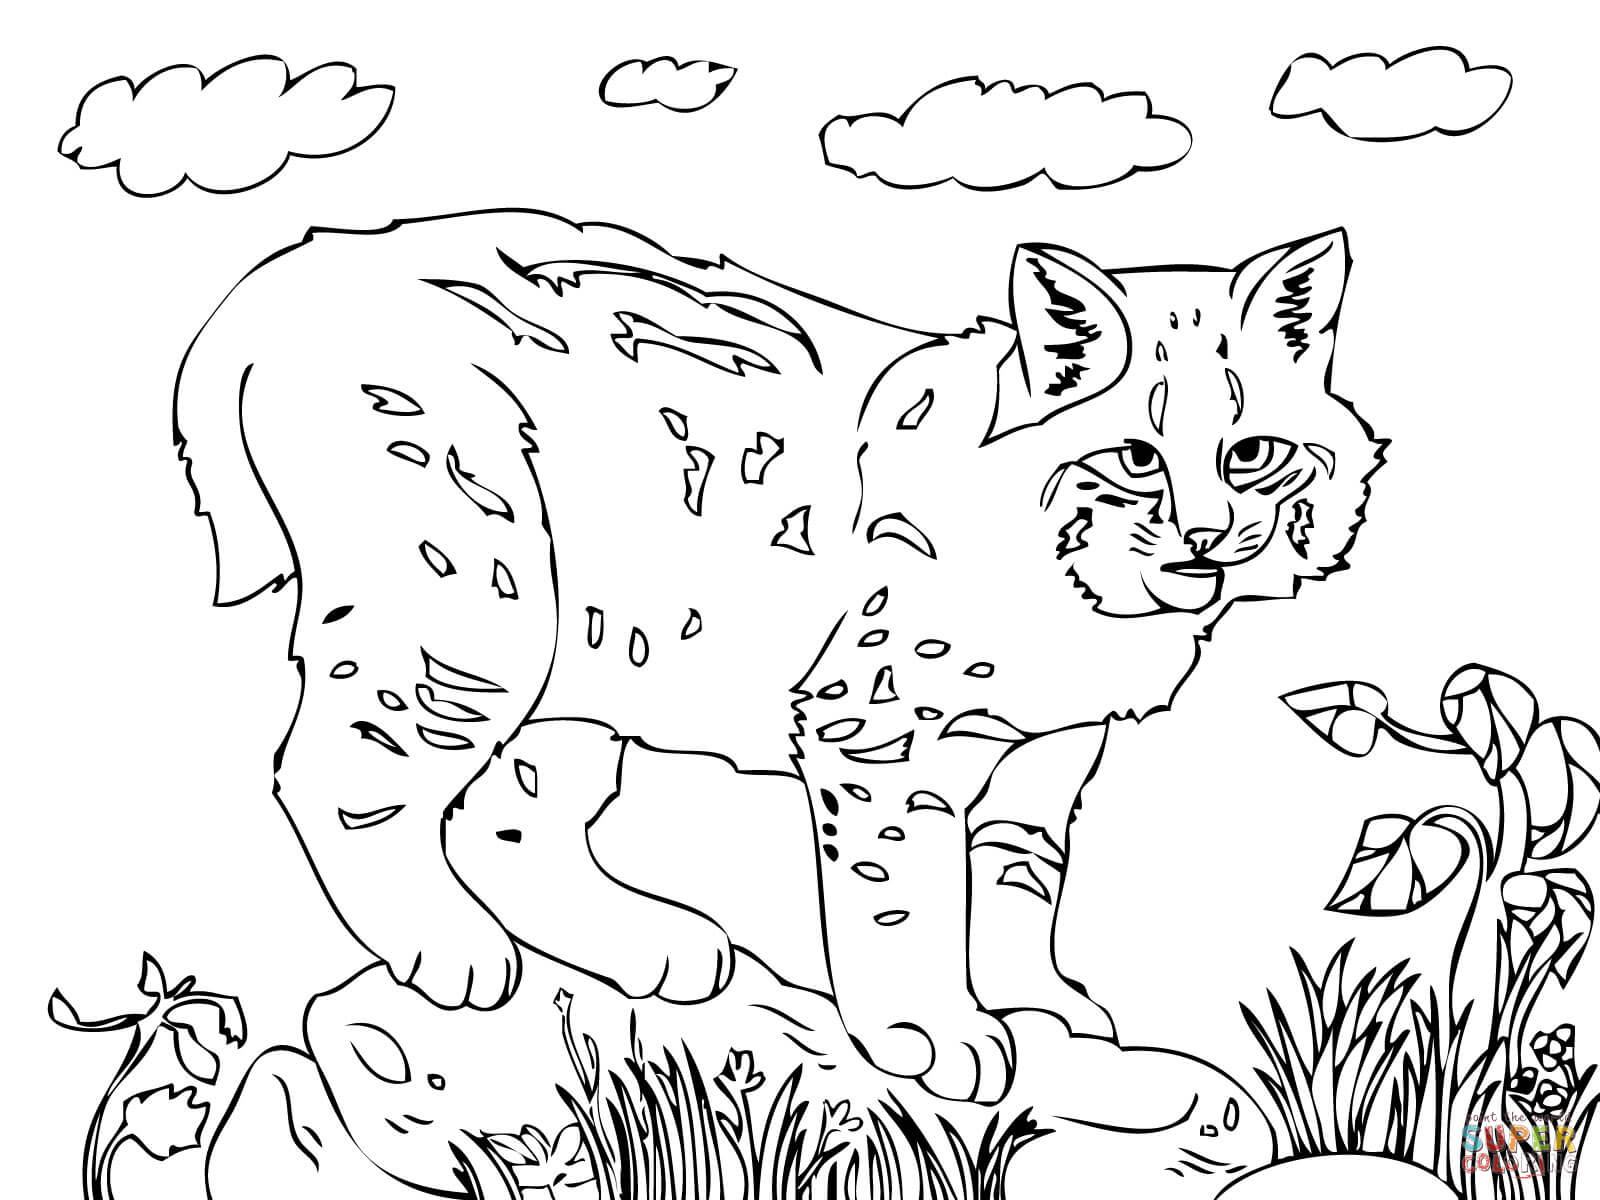 Bobcat coloring #9, Download drawings